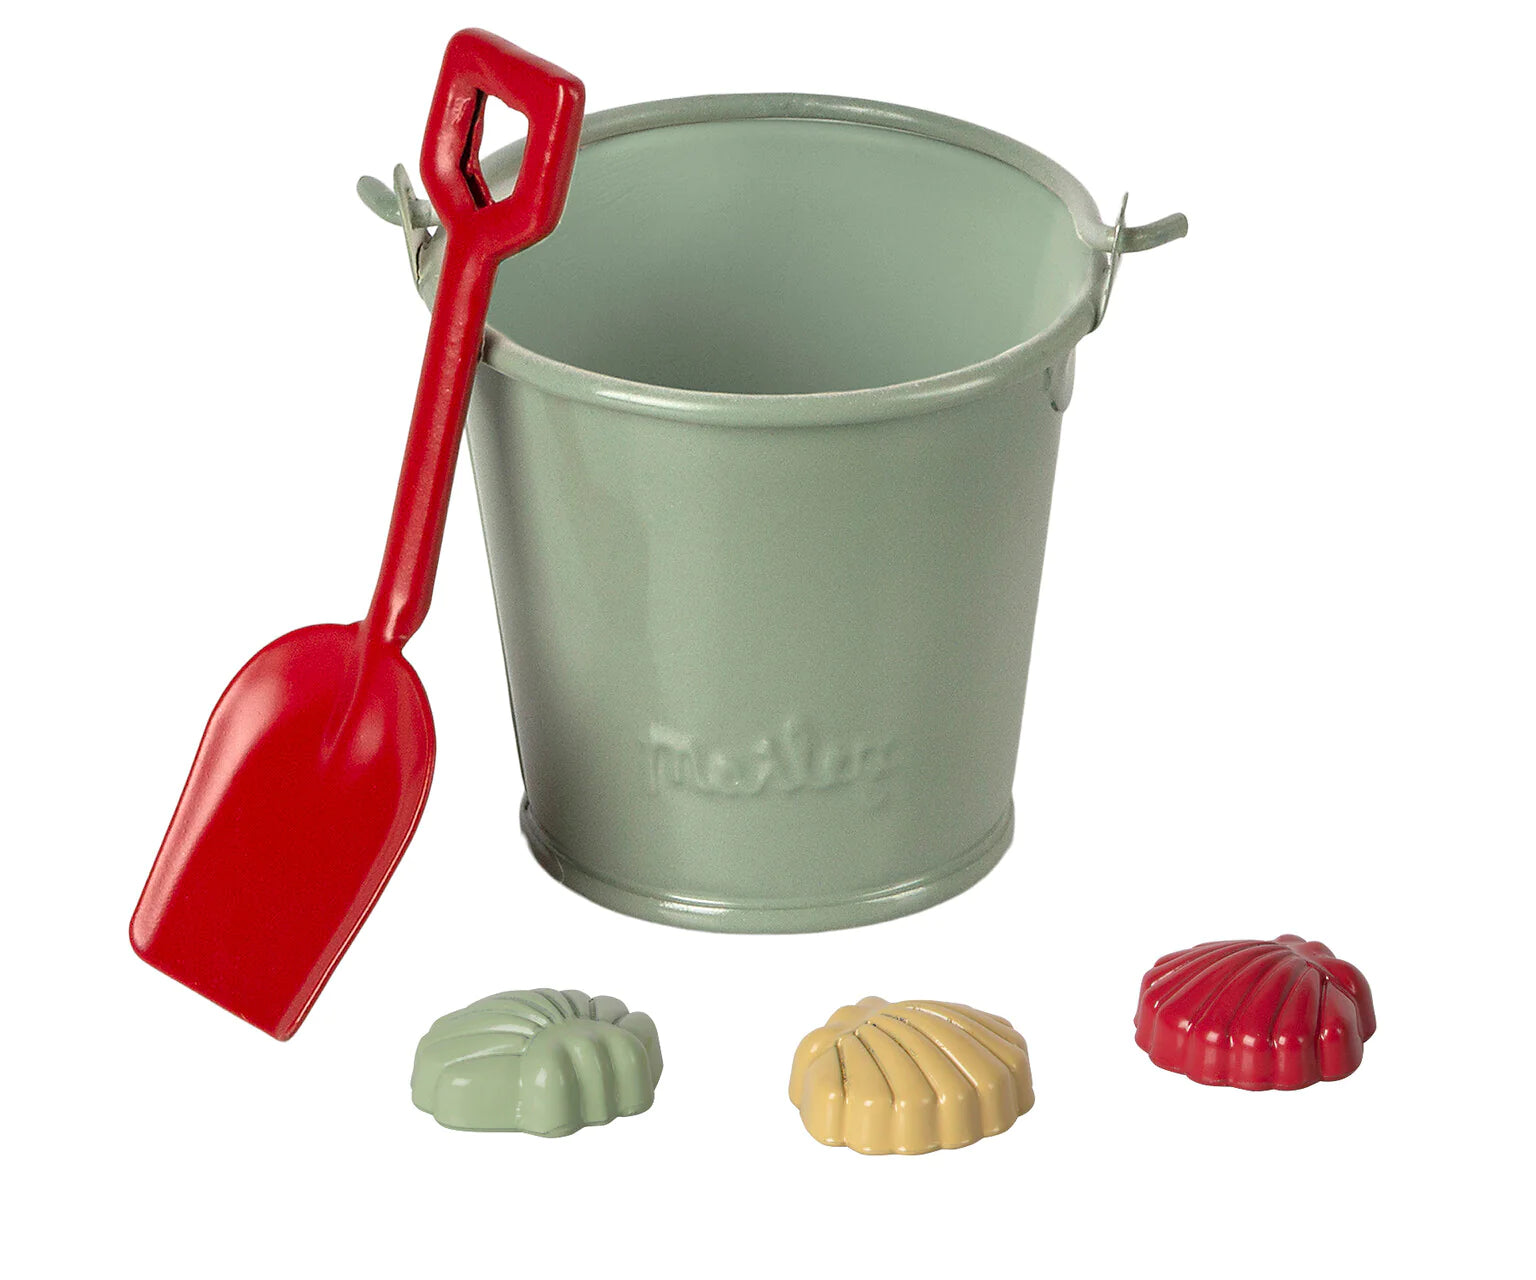 Maileg Beach set - Shovel, bucket and shells